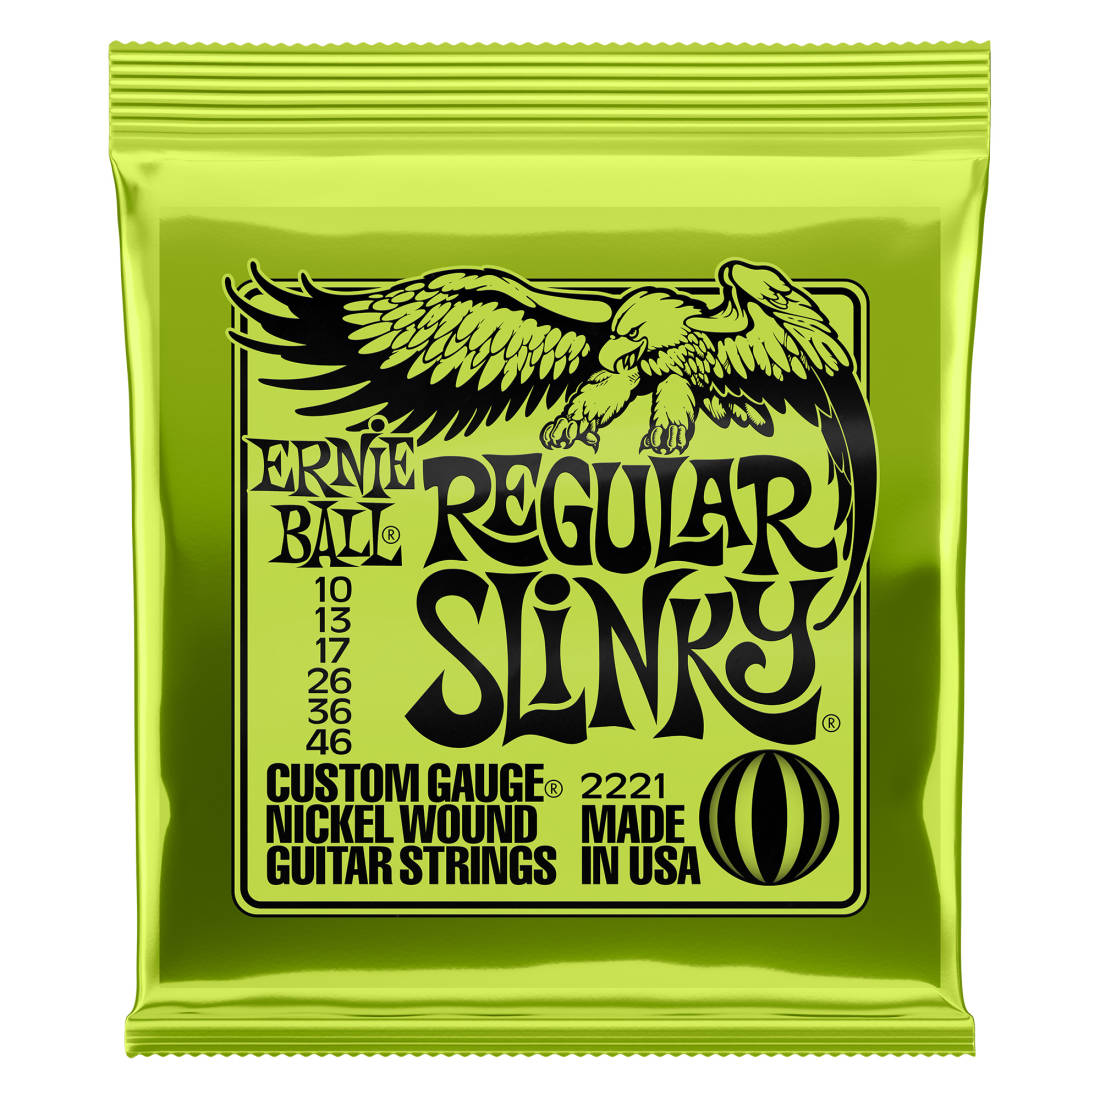 Regular Slinky 10-46 Electric Strings